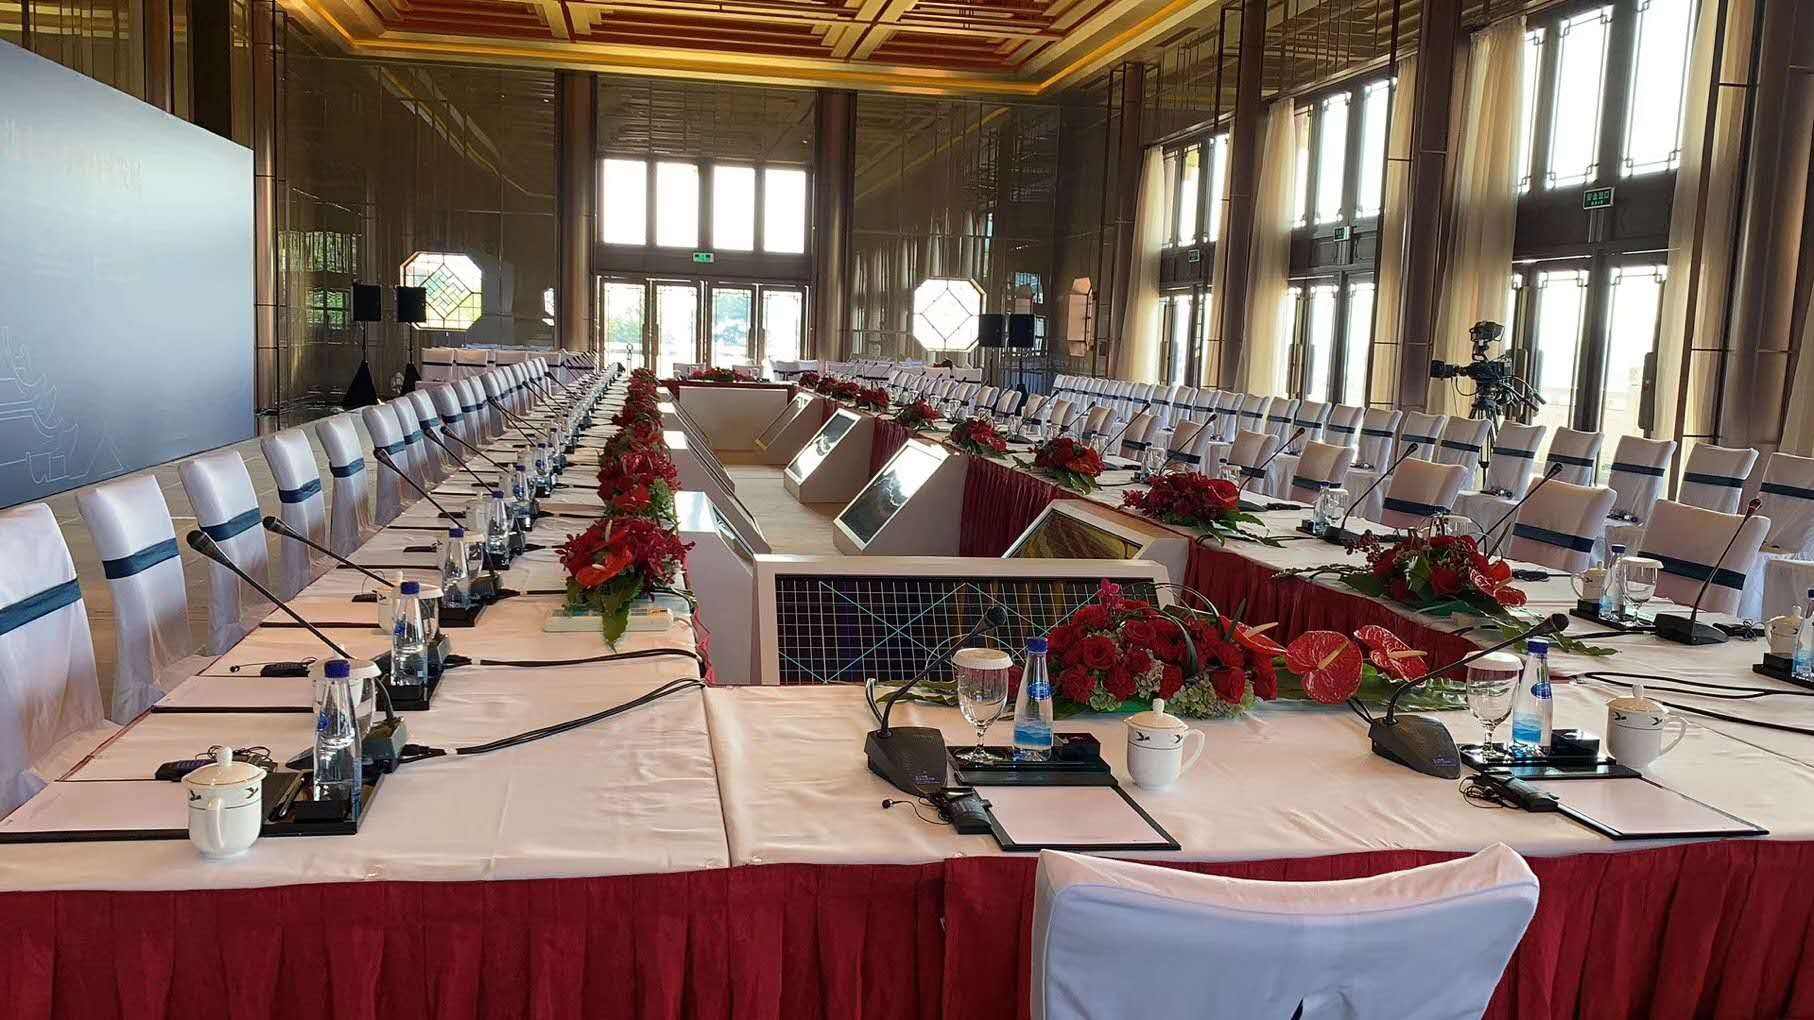 中国孟加拉交接中援孟国际会议中心同传设备项目、见证友谊